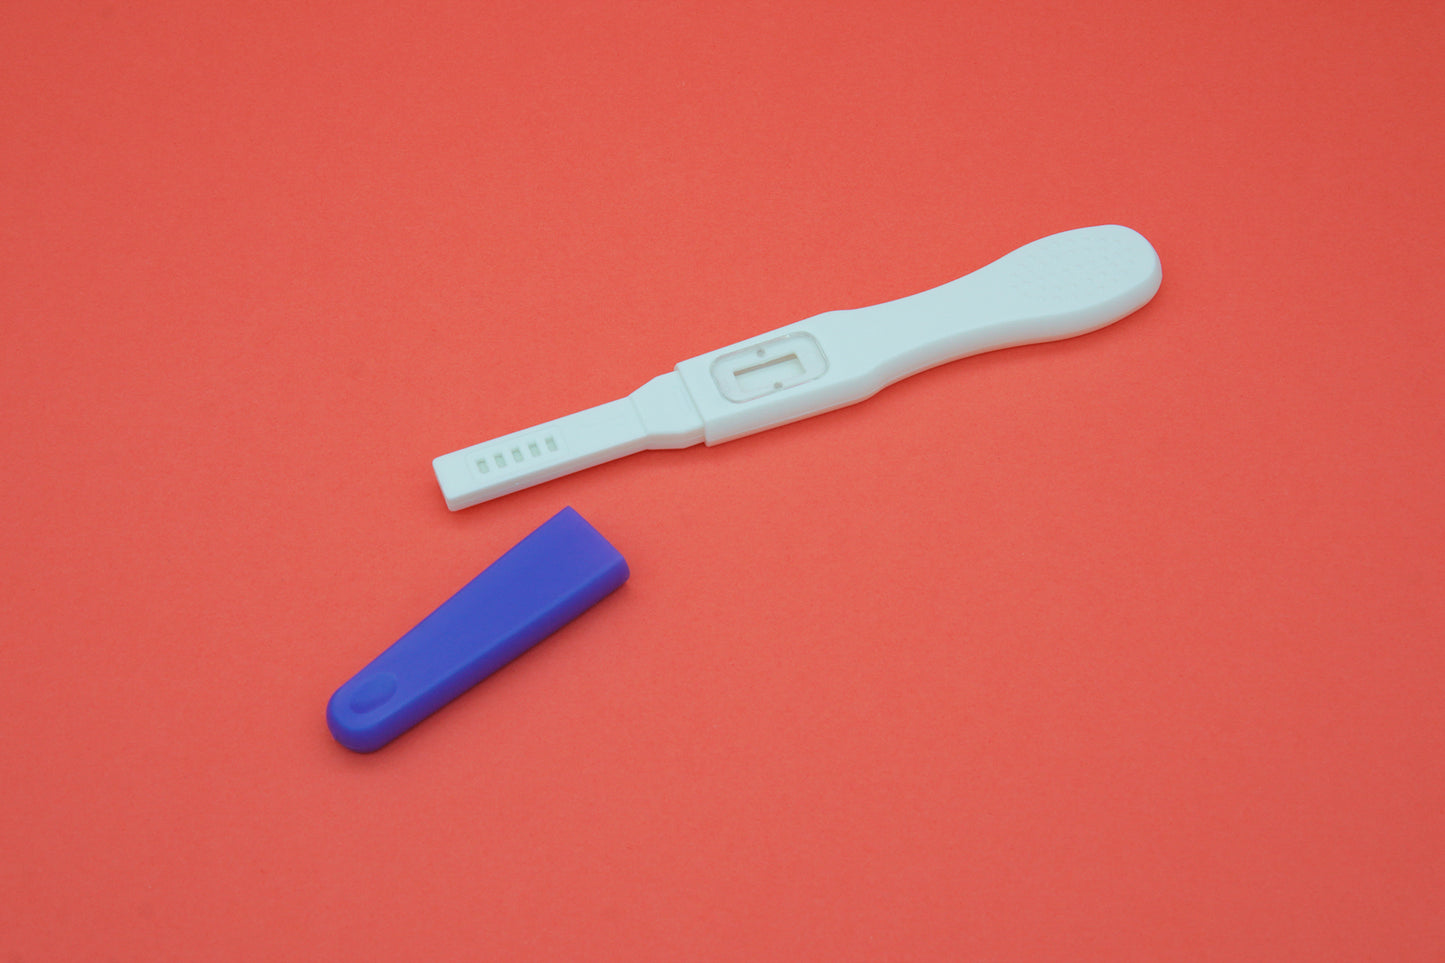 twoplus Fertility Pregnancy Test Kit uncapped